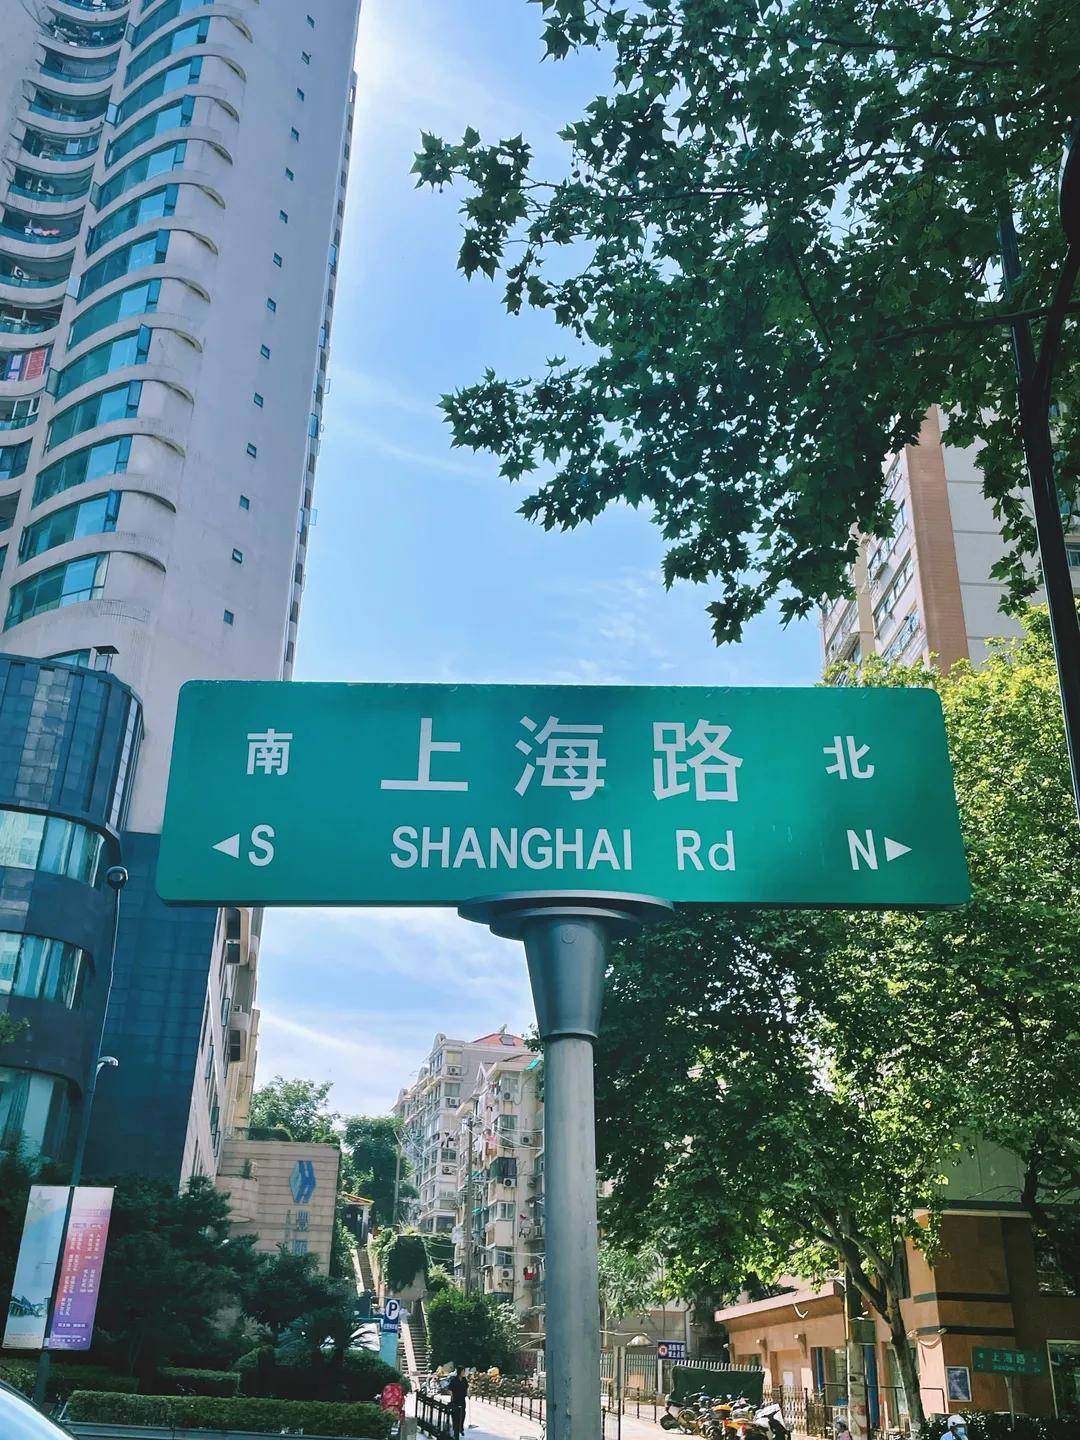 原创这条上海路怎么总也走不够呢